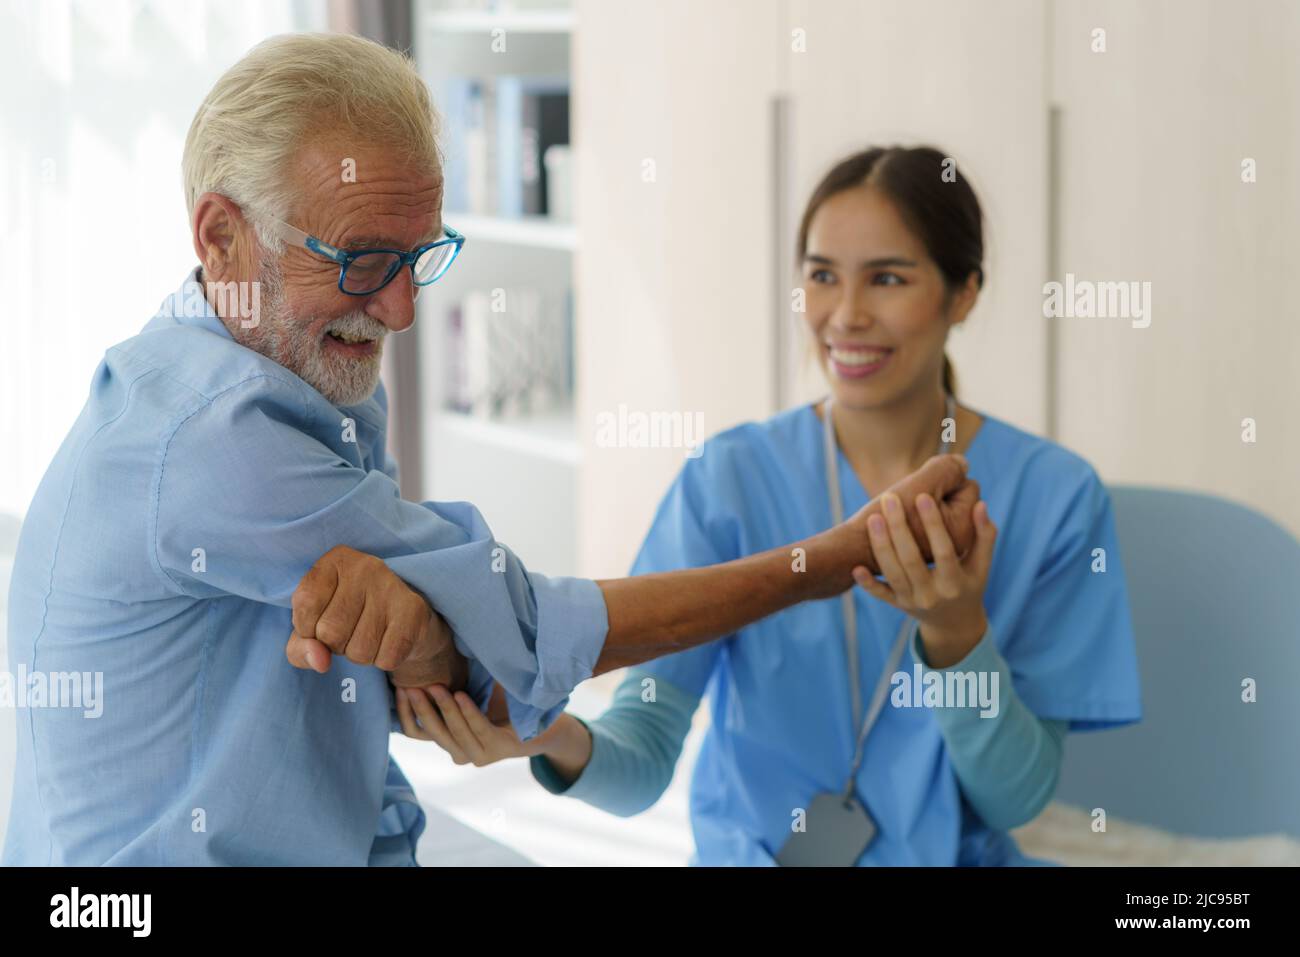 Ejercicios de fisioterapia para el hombre mayor con cuidador asiático o fisioterapeuta de enfermería en uniforme que ayuda a un paciente varón de edad avanzada en casa. Foto de stock